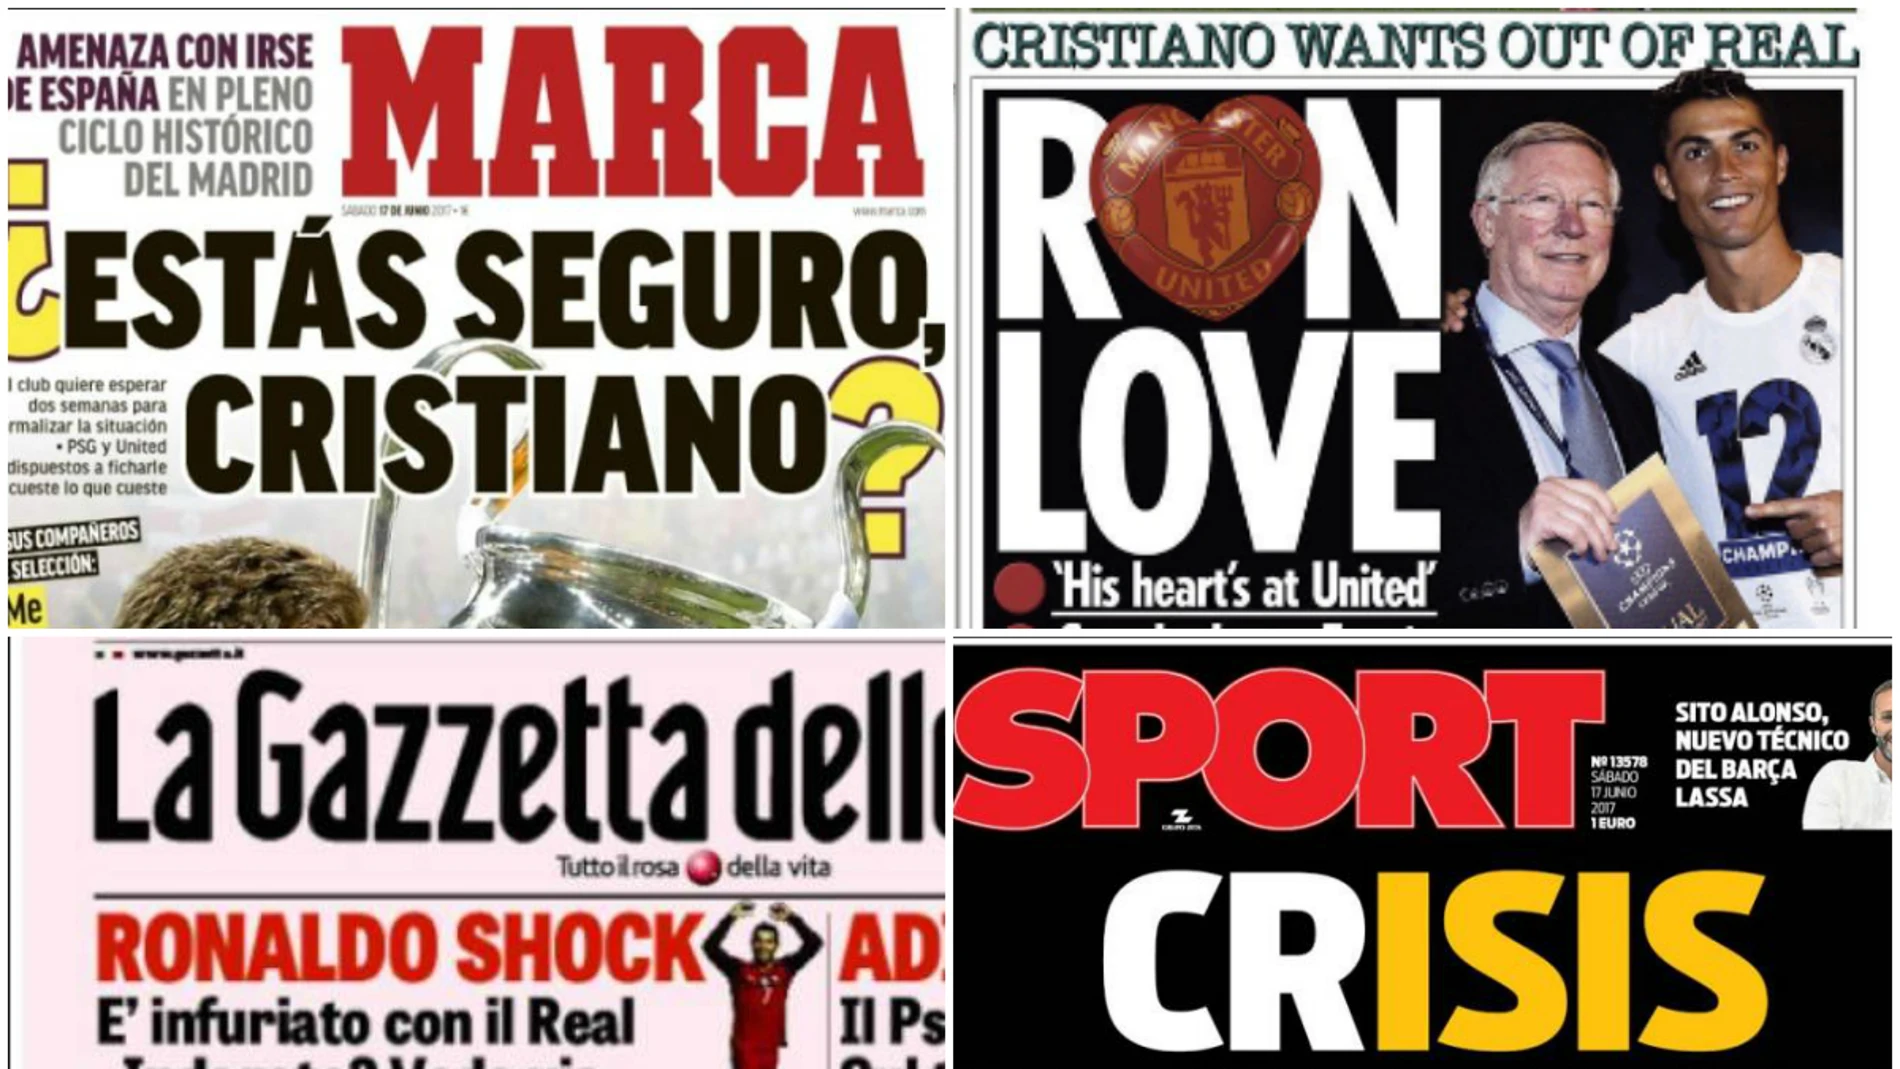 Las portadas de los principales diarios tras la noticia de Cristiano Ronaldo